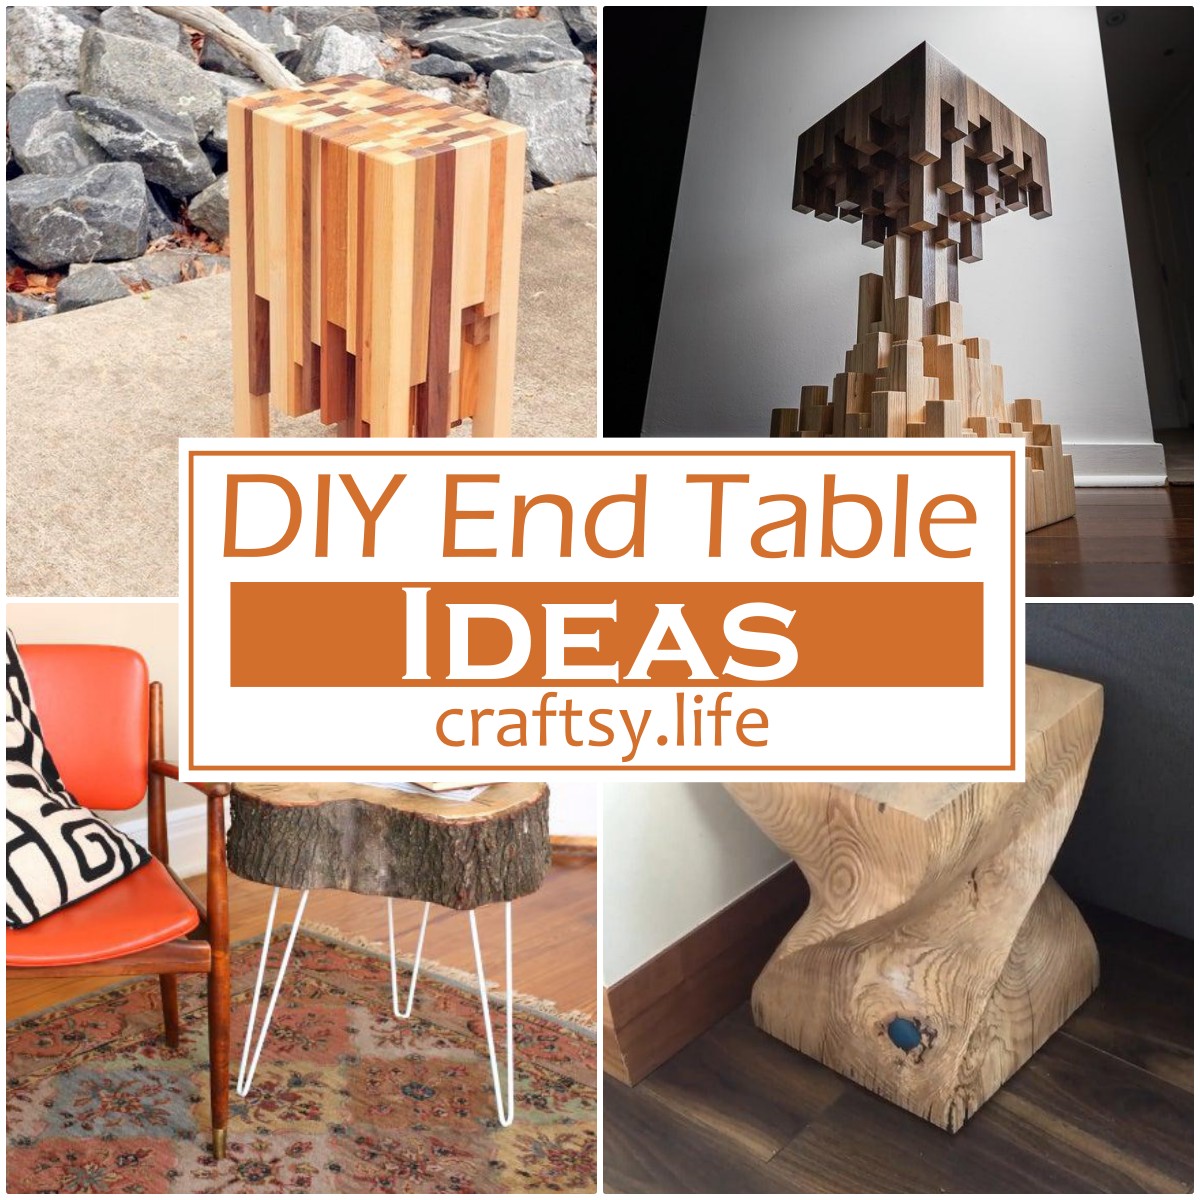 DIY End Table Ideas